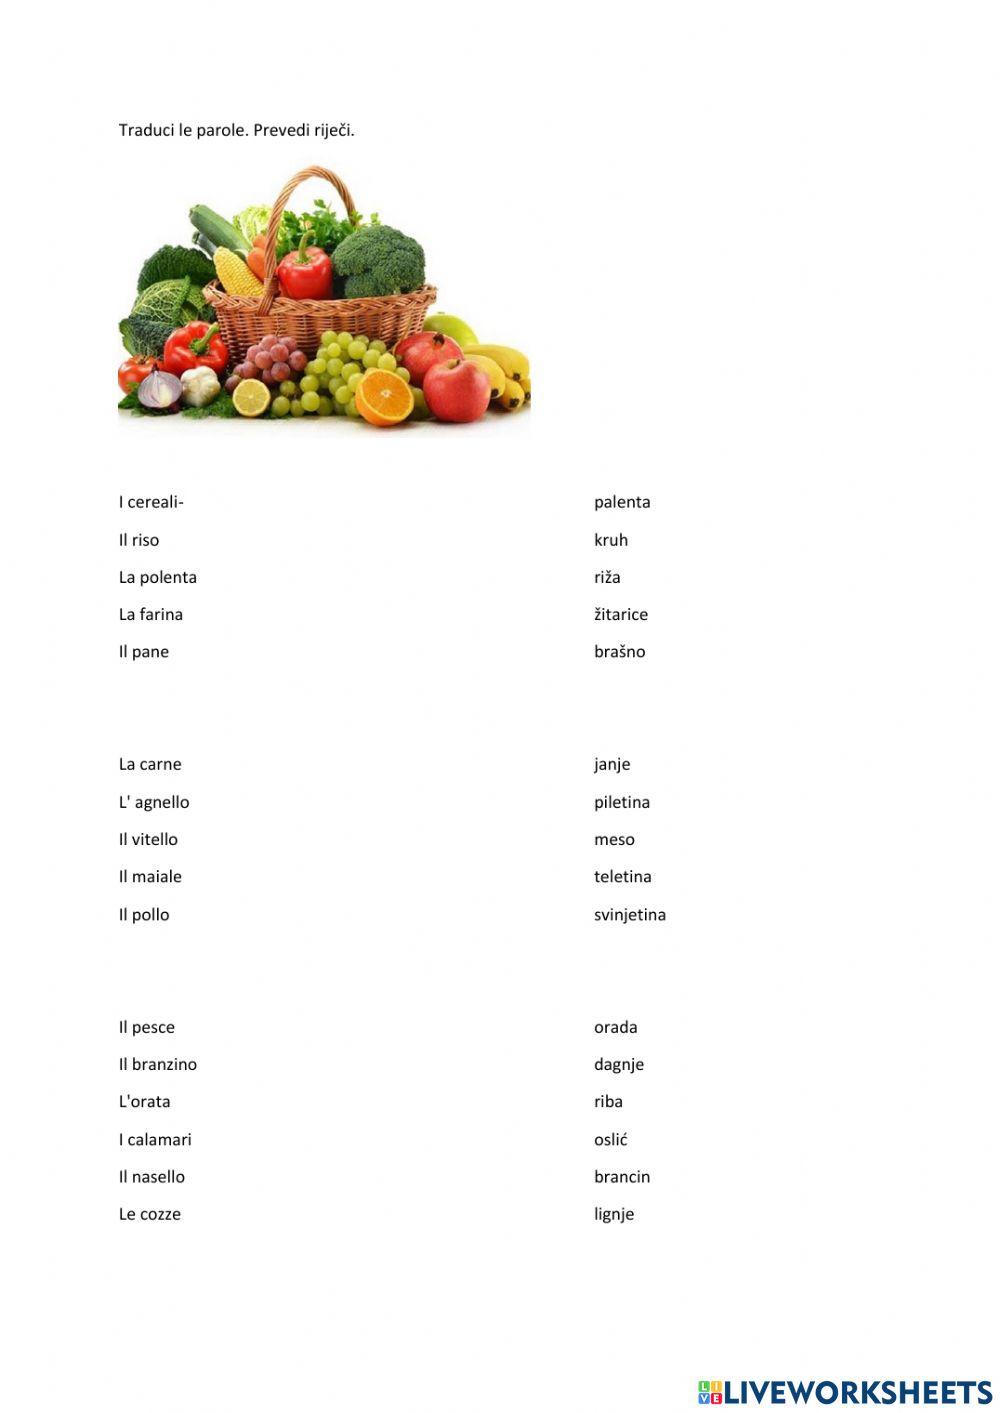 Frutta , verdura, carne, pesce